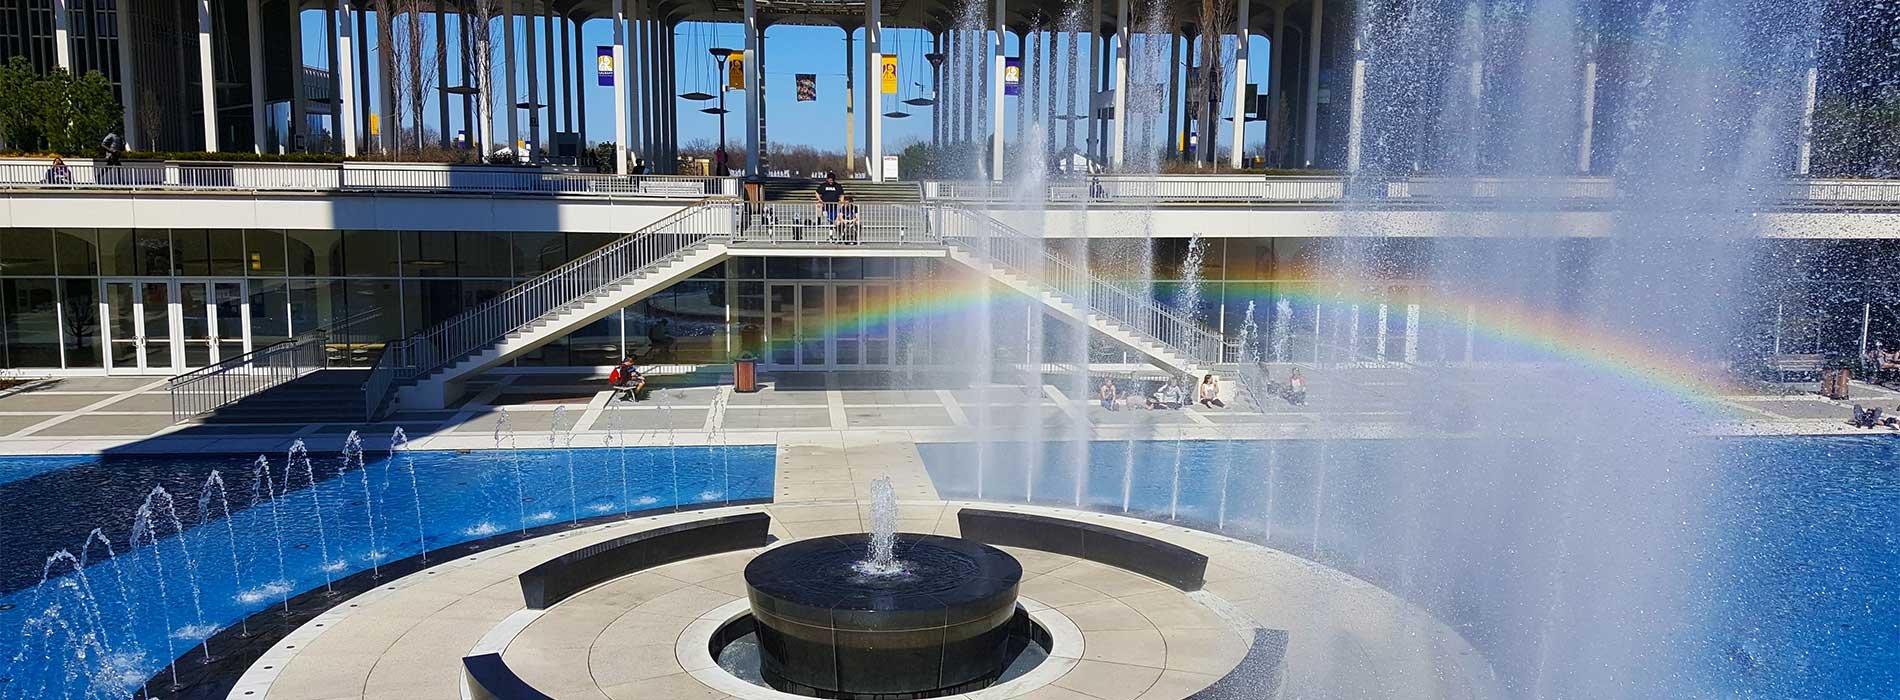 A rainbow over the main university fountain.